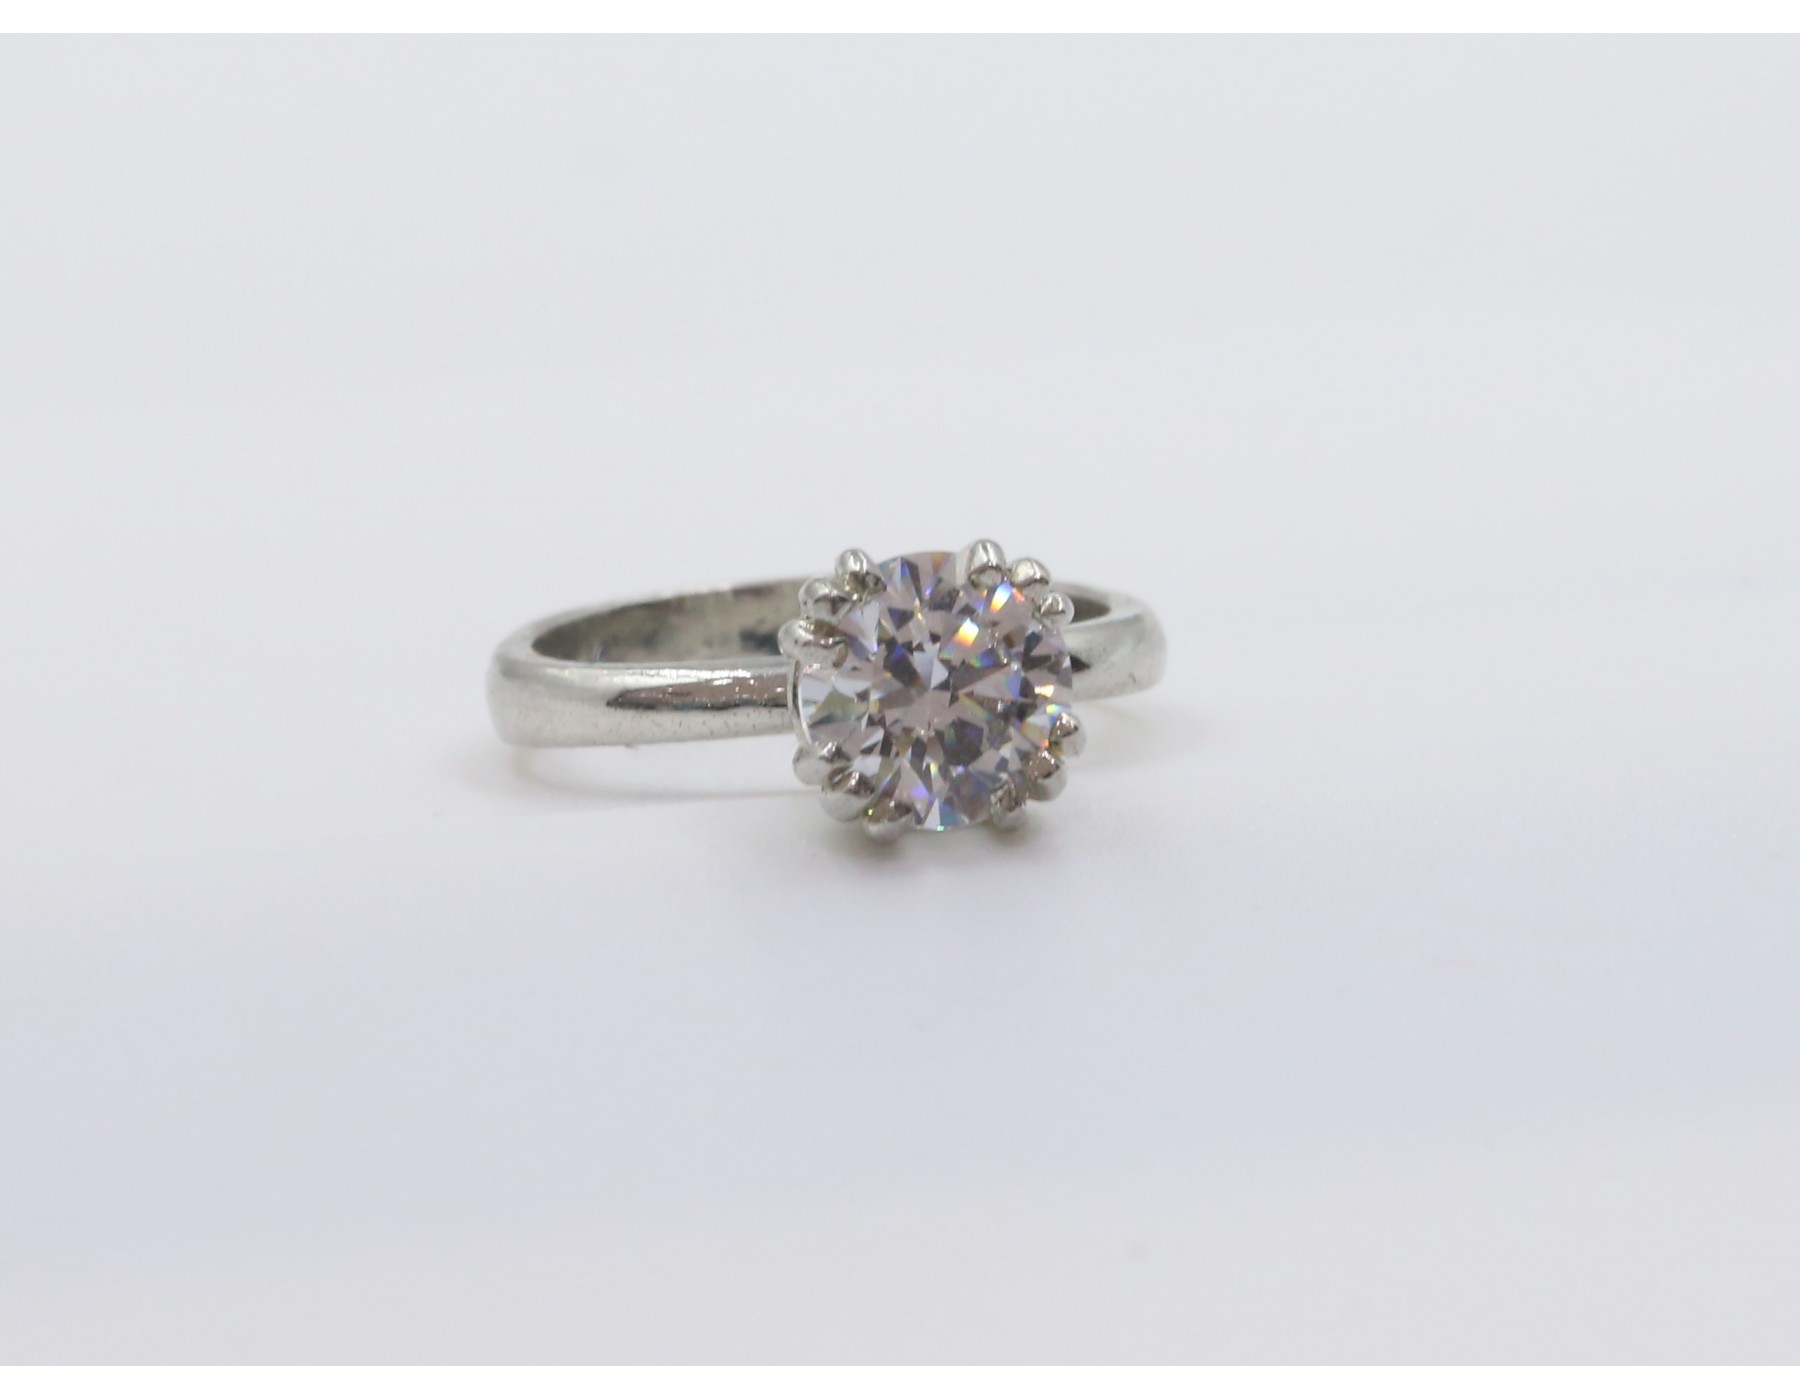 Ravishing Silver Ring | Flower Design Silver Ring - Rings - FOLKWAYS